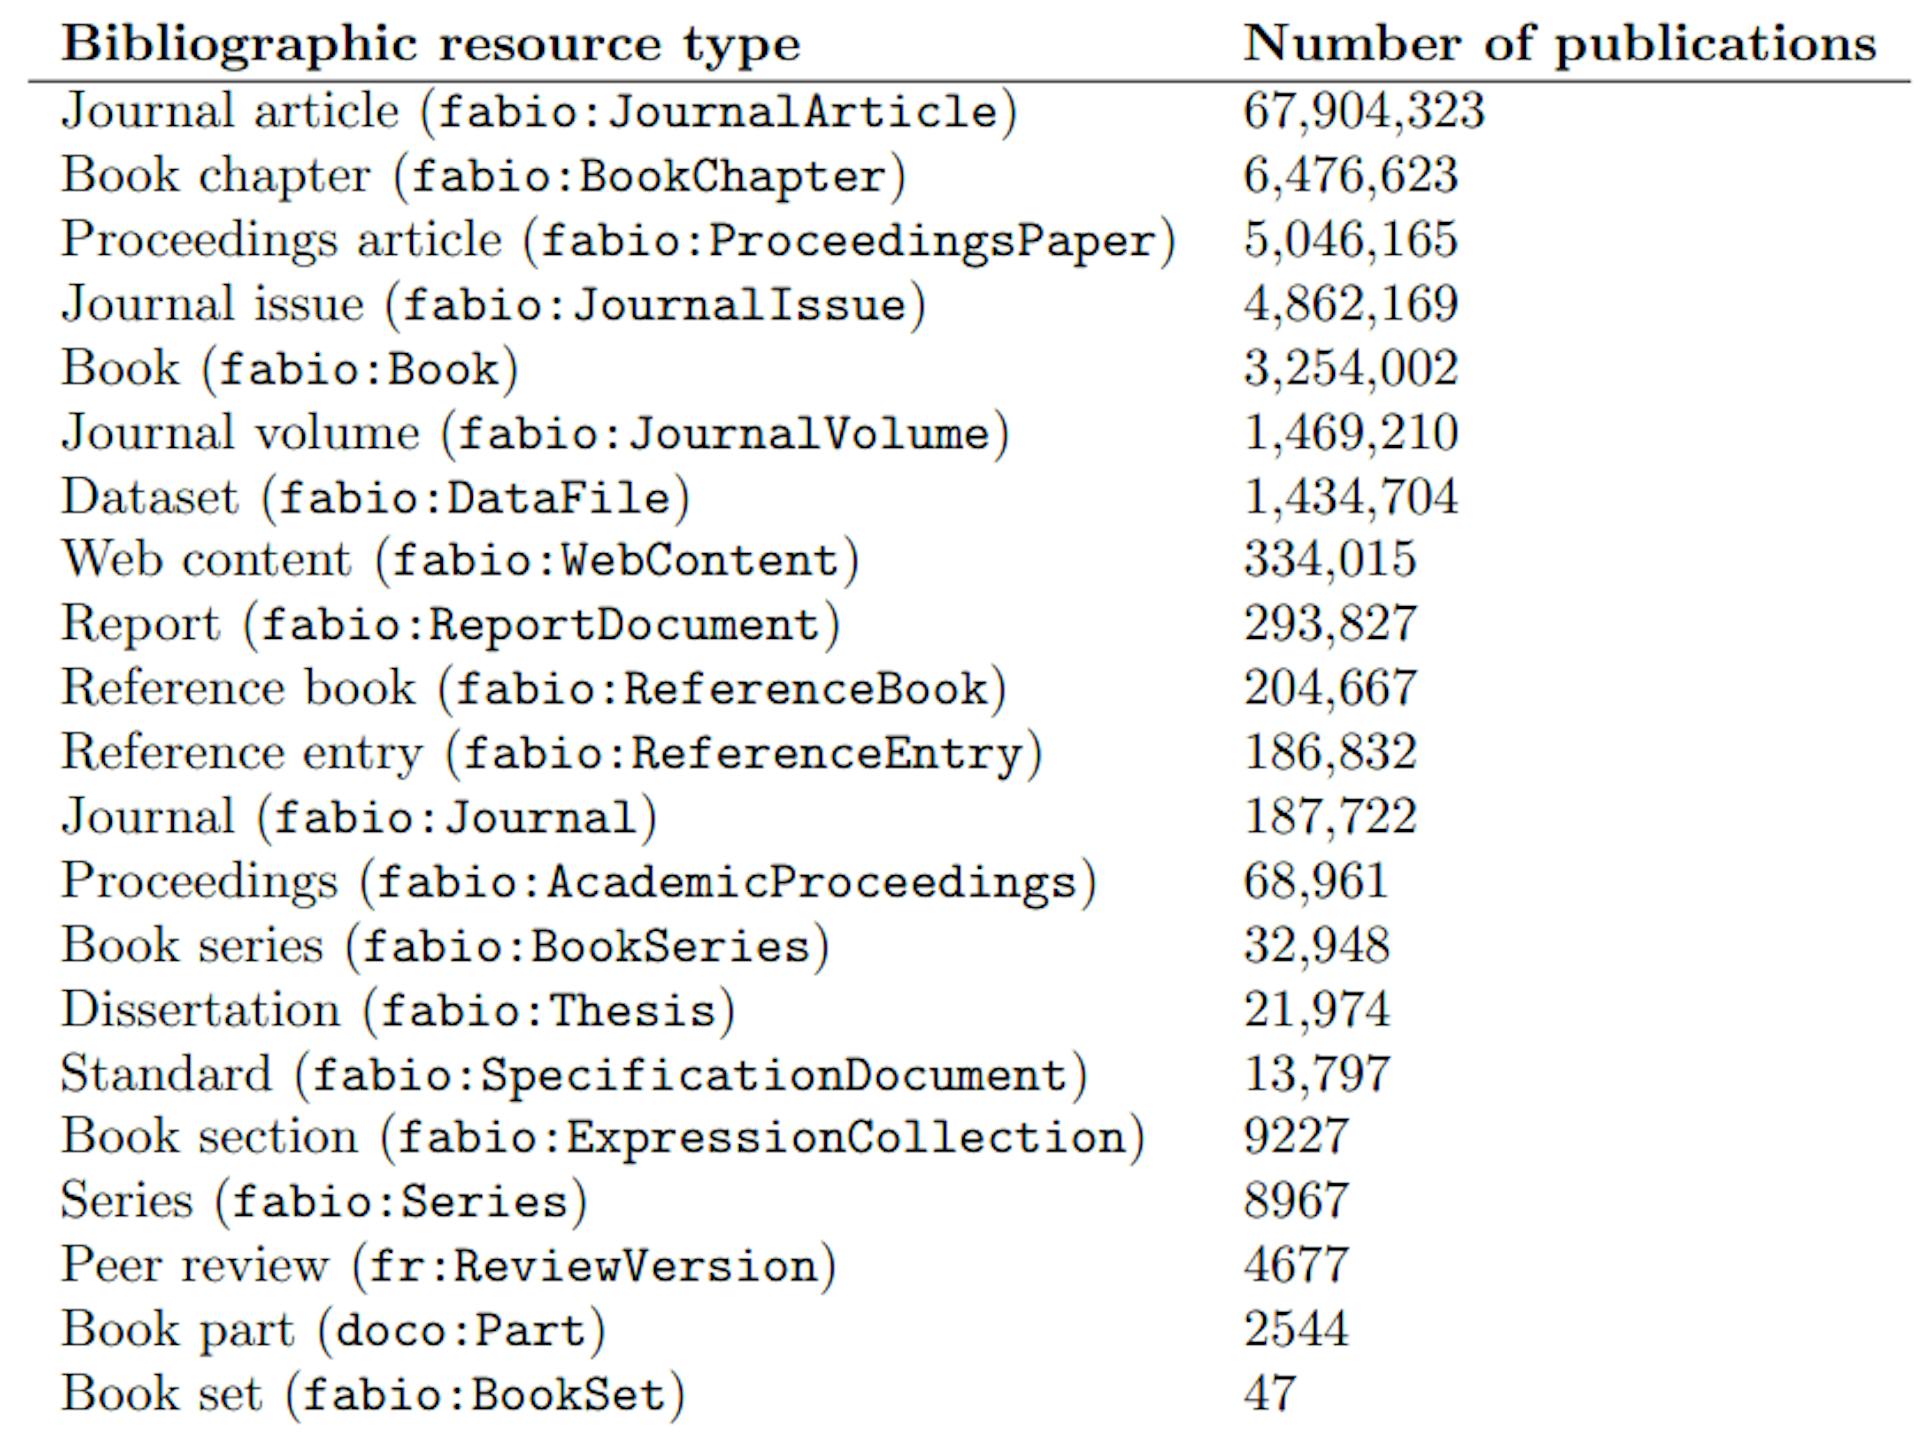 Bảng 5: Tất cả các loại tài nguyên thư mục có liên quan đến OpenCites Meta, được sắp xếp theo số lượng ấn phẩm thuộc loại đó. Các ontology tham chiếu là FaBiO (http://purl.org/spar/fabio), DOCO (http://purl.org/spar/doco) và các đánh giá FAIR (http://purl.org/spar/fr)